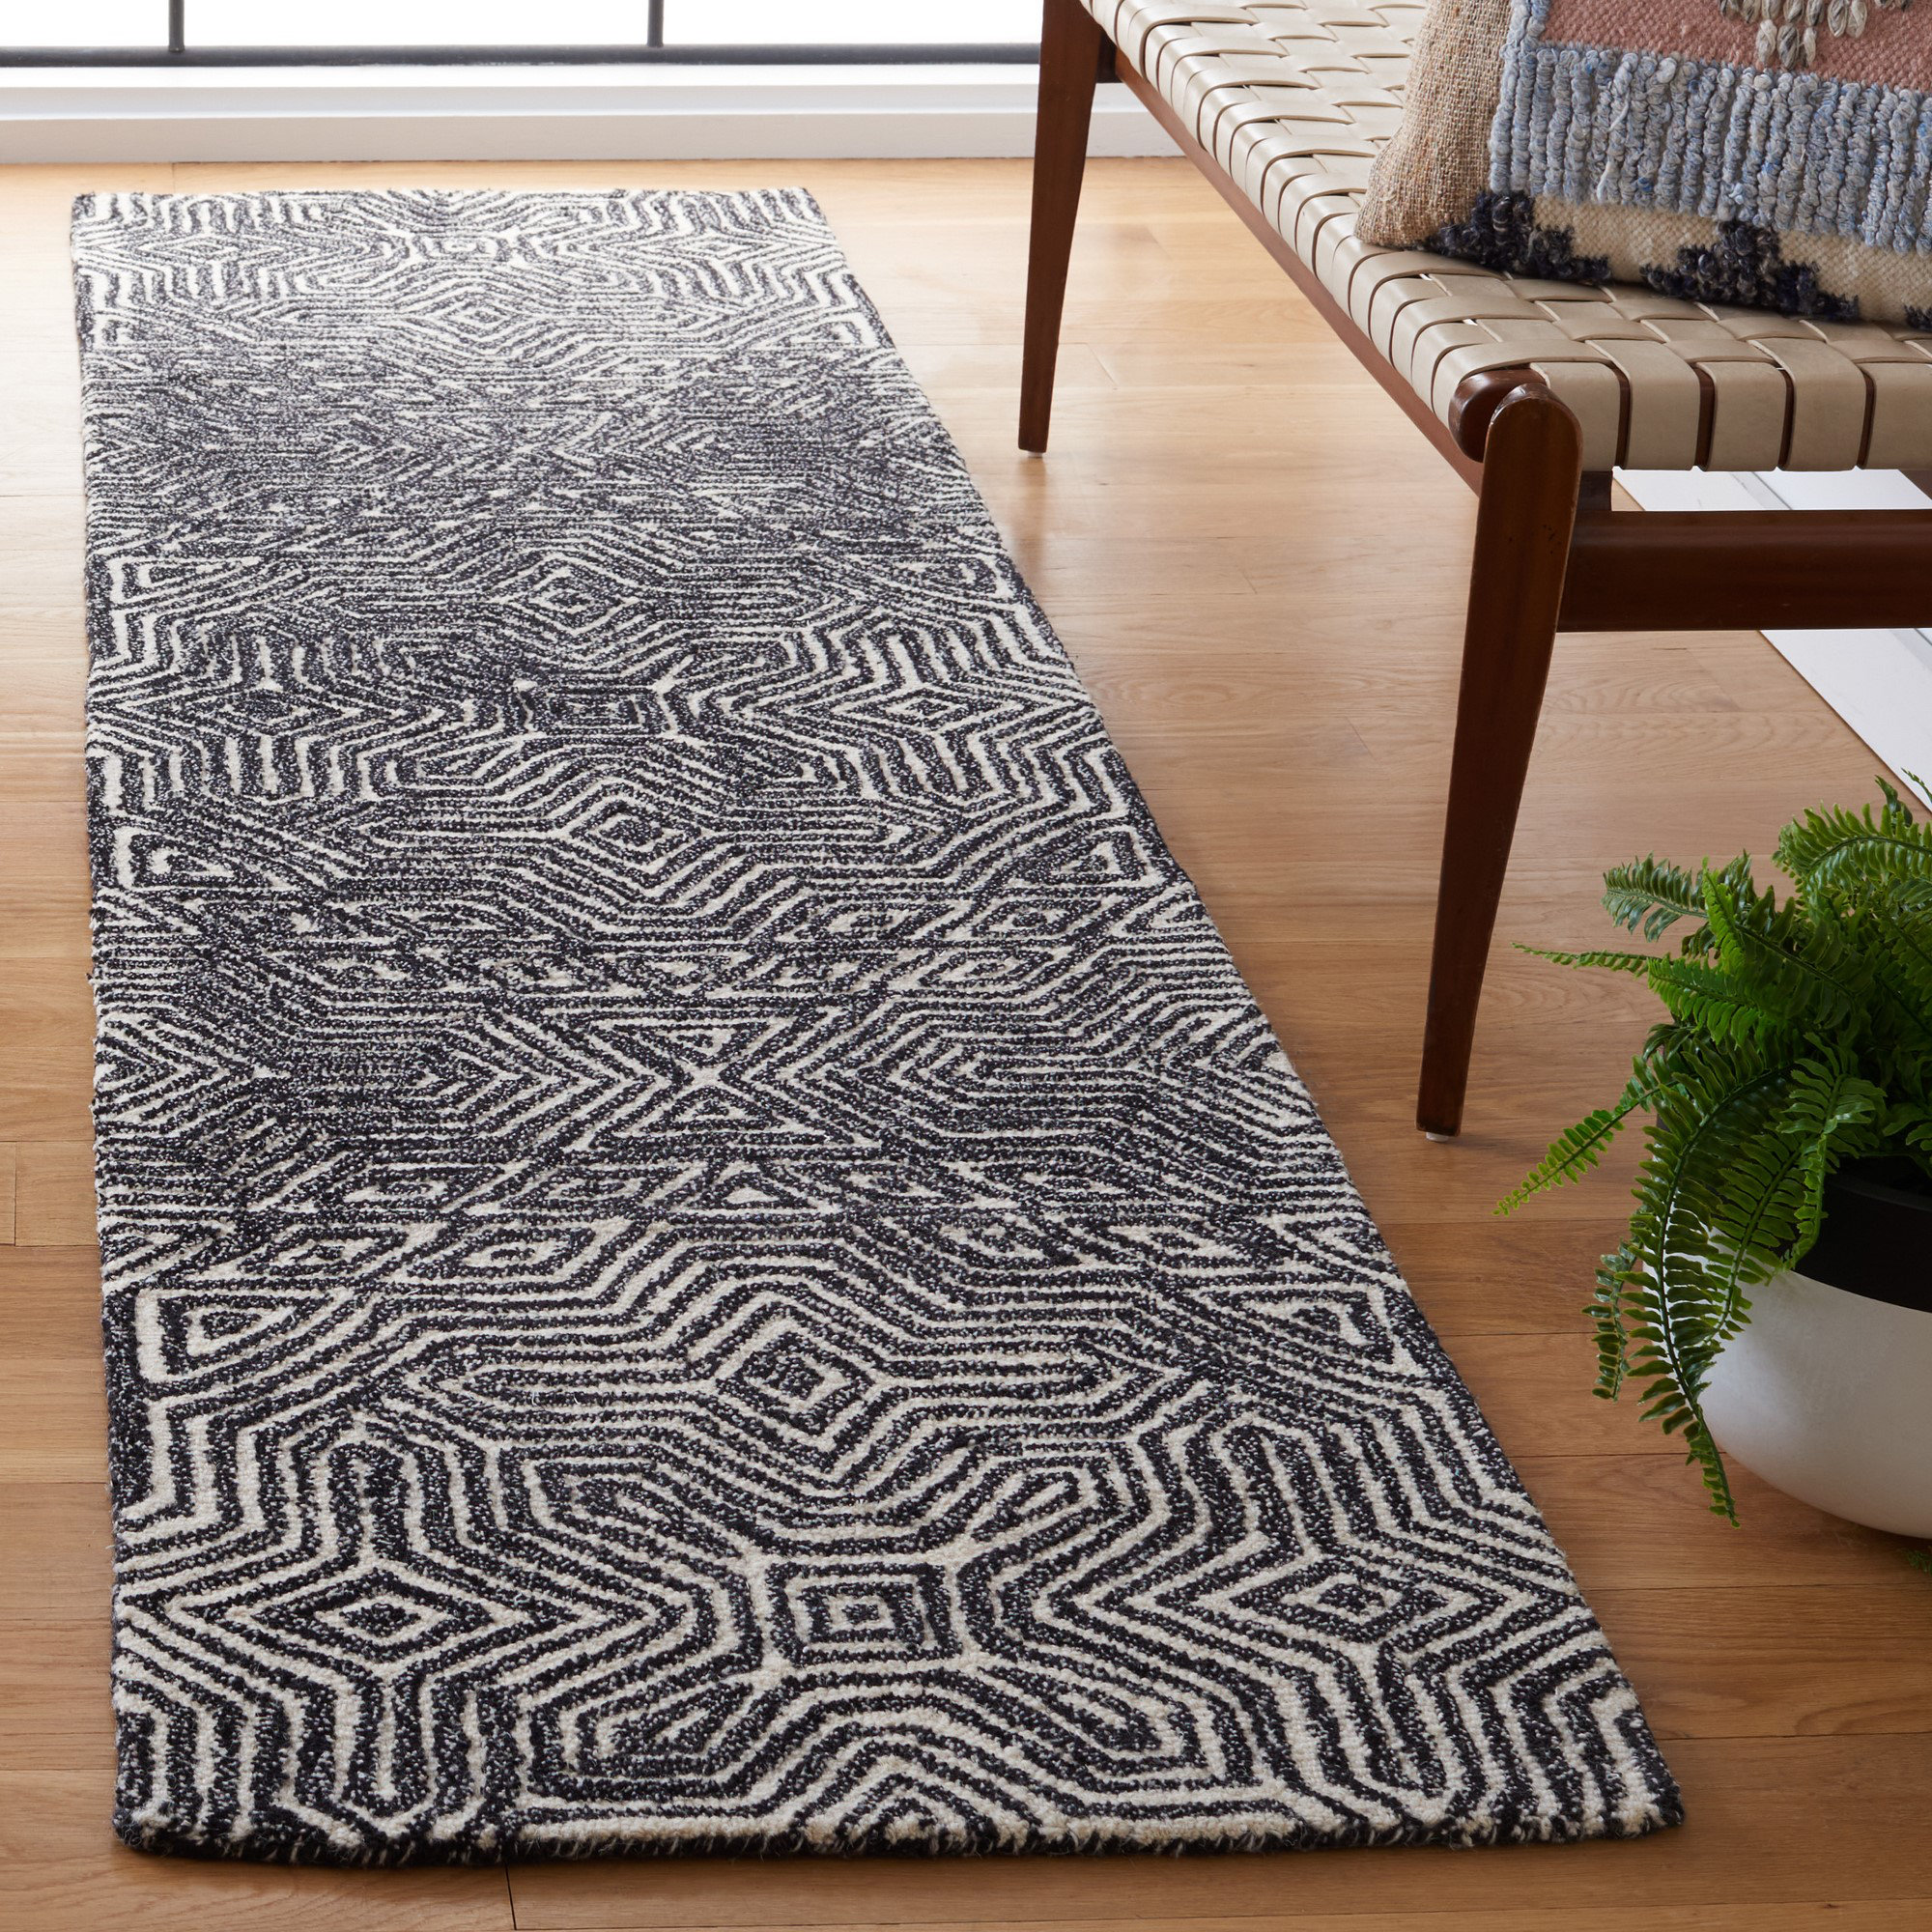 Woven Scandinavian Handmade Rug Weighted Rugs for Living Room Mid Century  Modern Area Rug 100% Wool Berber Carpet Floor Rugs Wool Blanket 